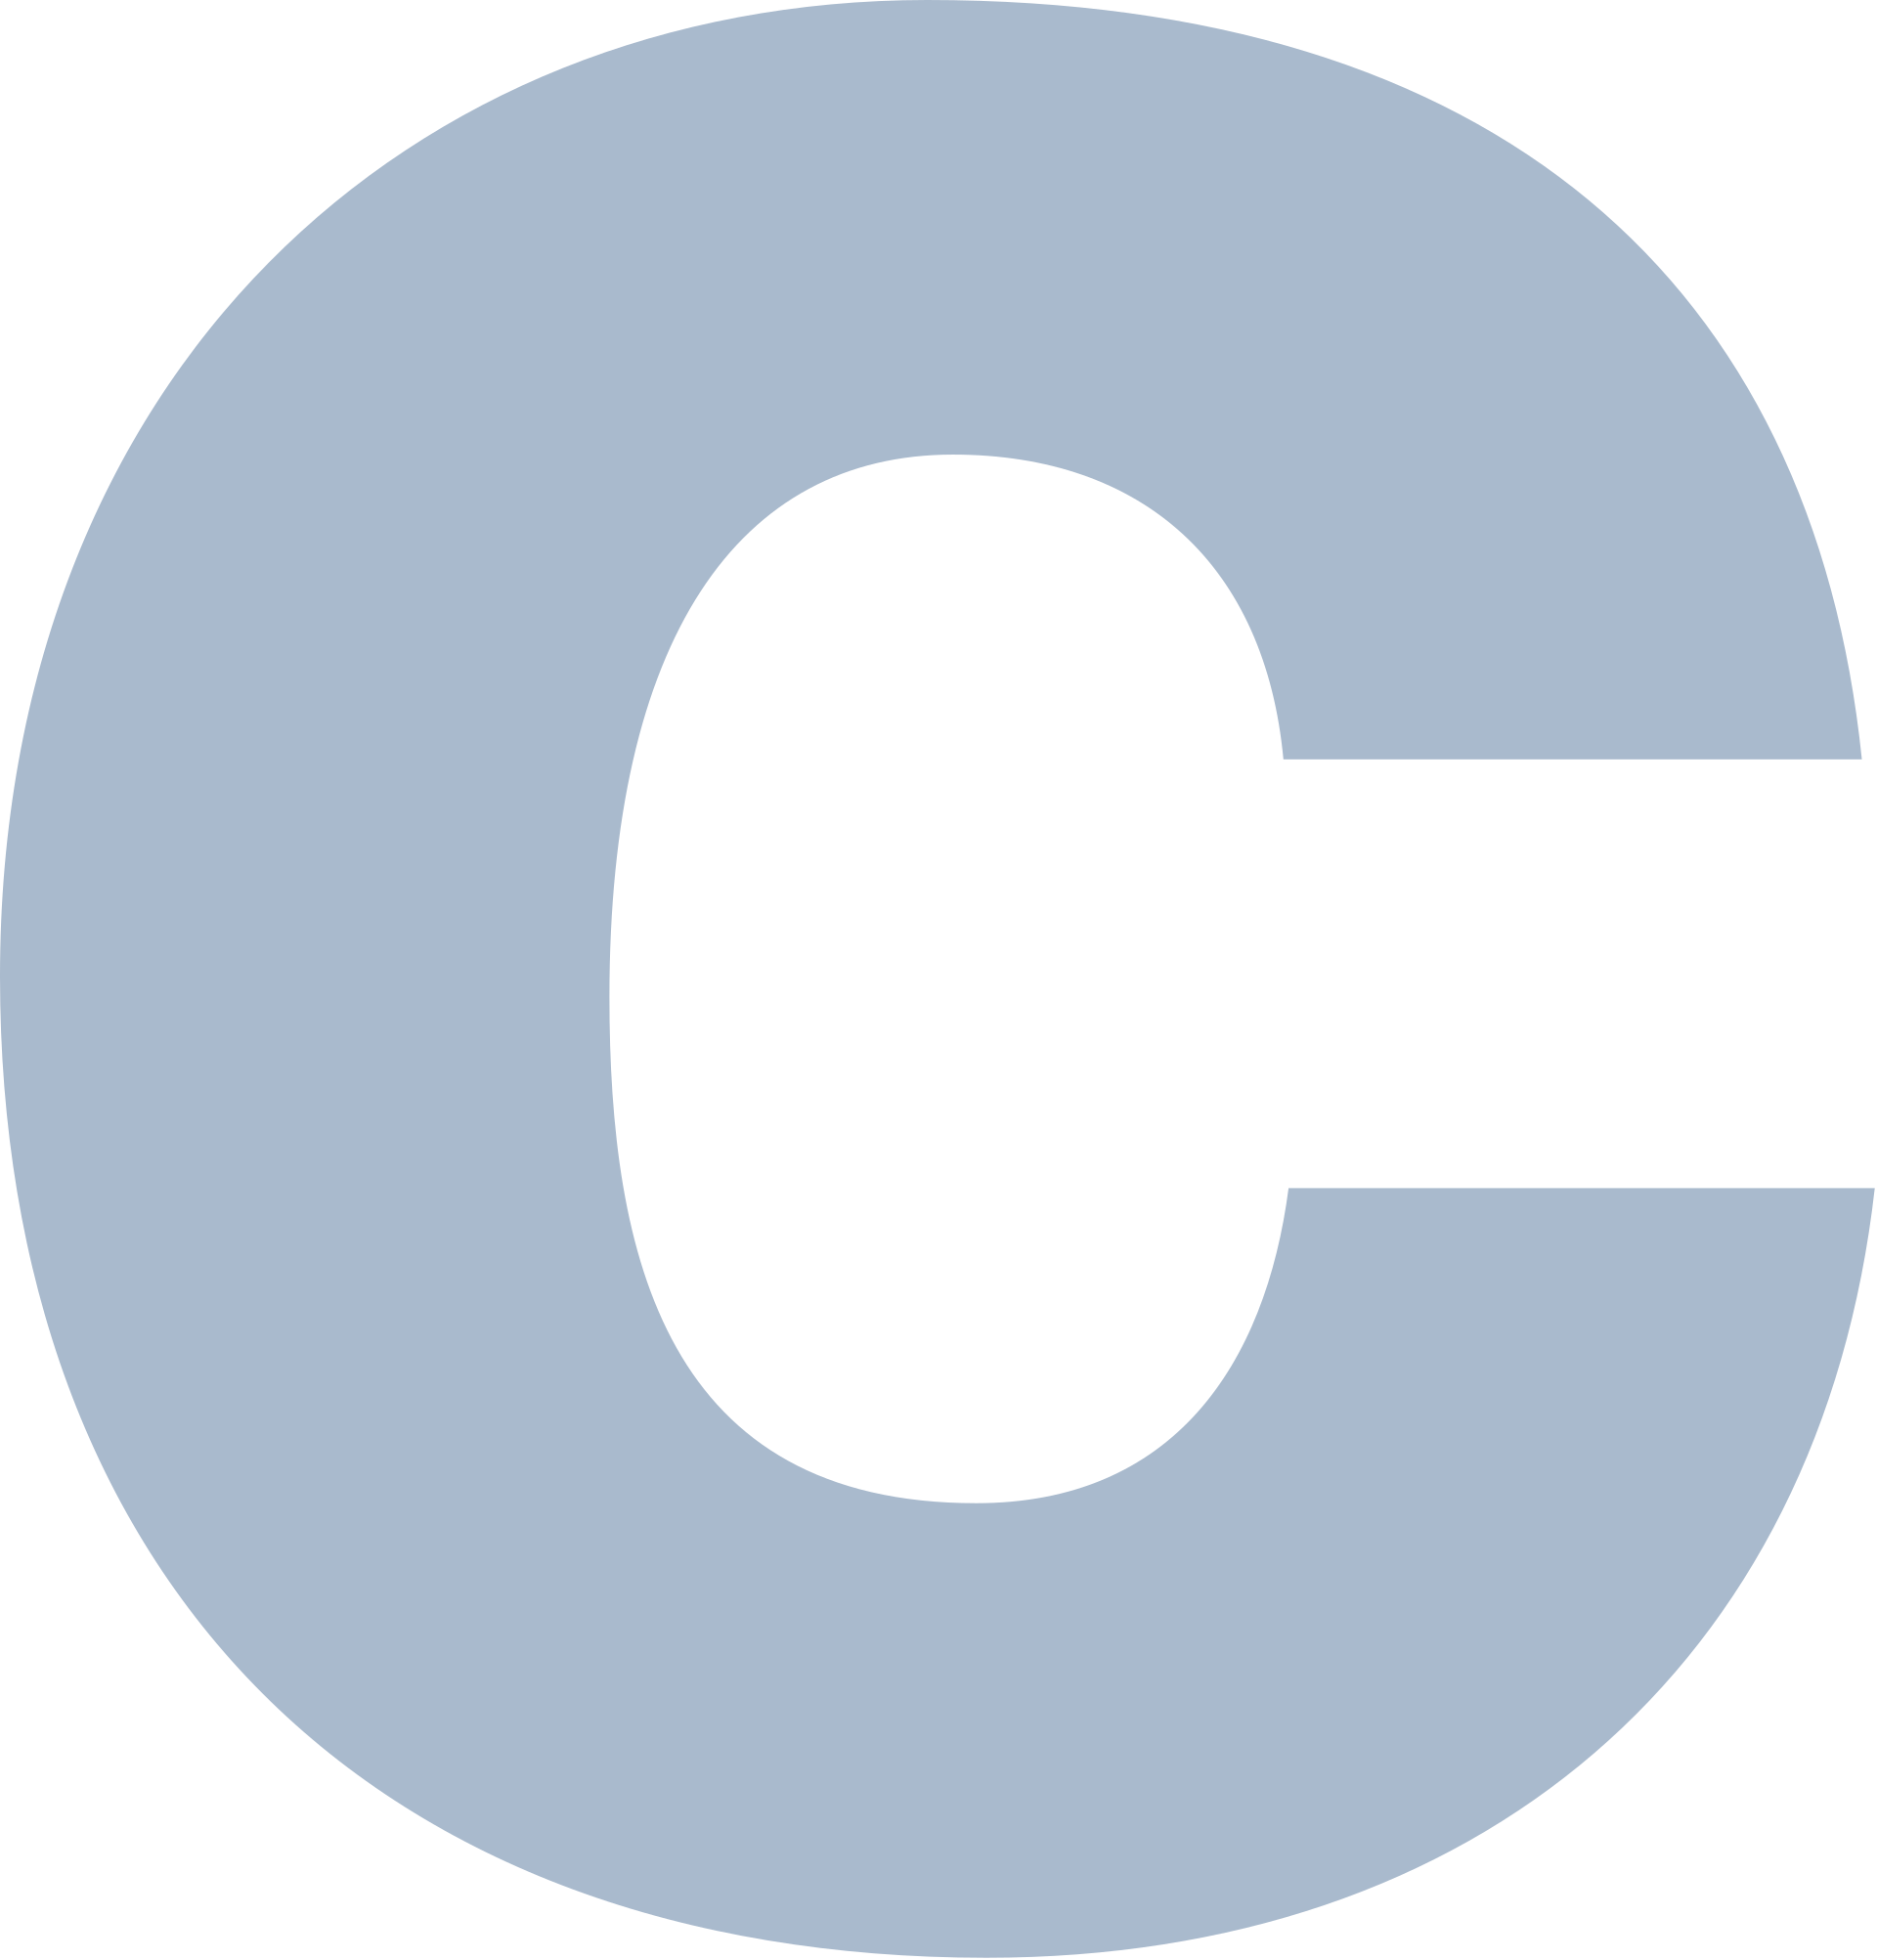 C言語のロゴ